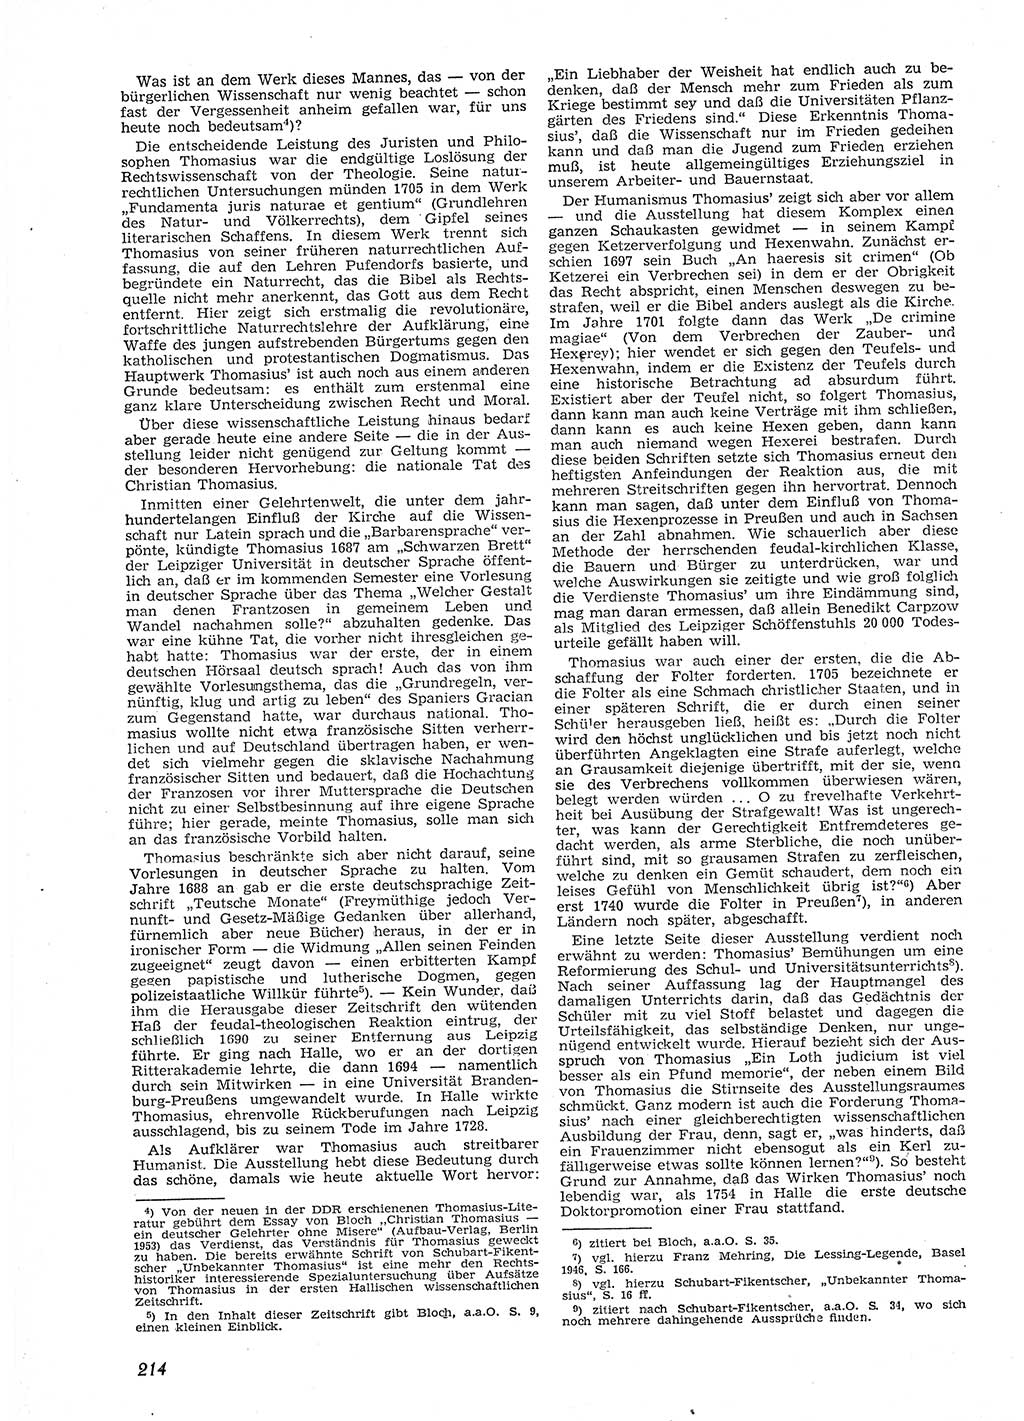 Neue Justiz (NJ), Zeitschrift für Recht und Rechtswissenschaft [Deutsche Demokratische Republik (DDR)], 9. Jahrgang 1955, Seite 214 (NJ DDR 1955, S. 214)